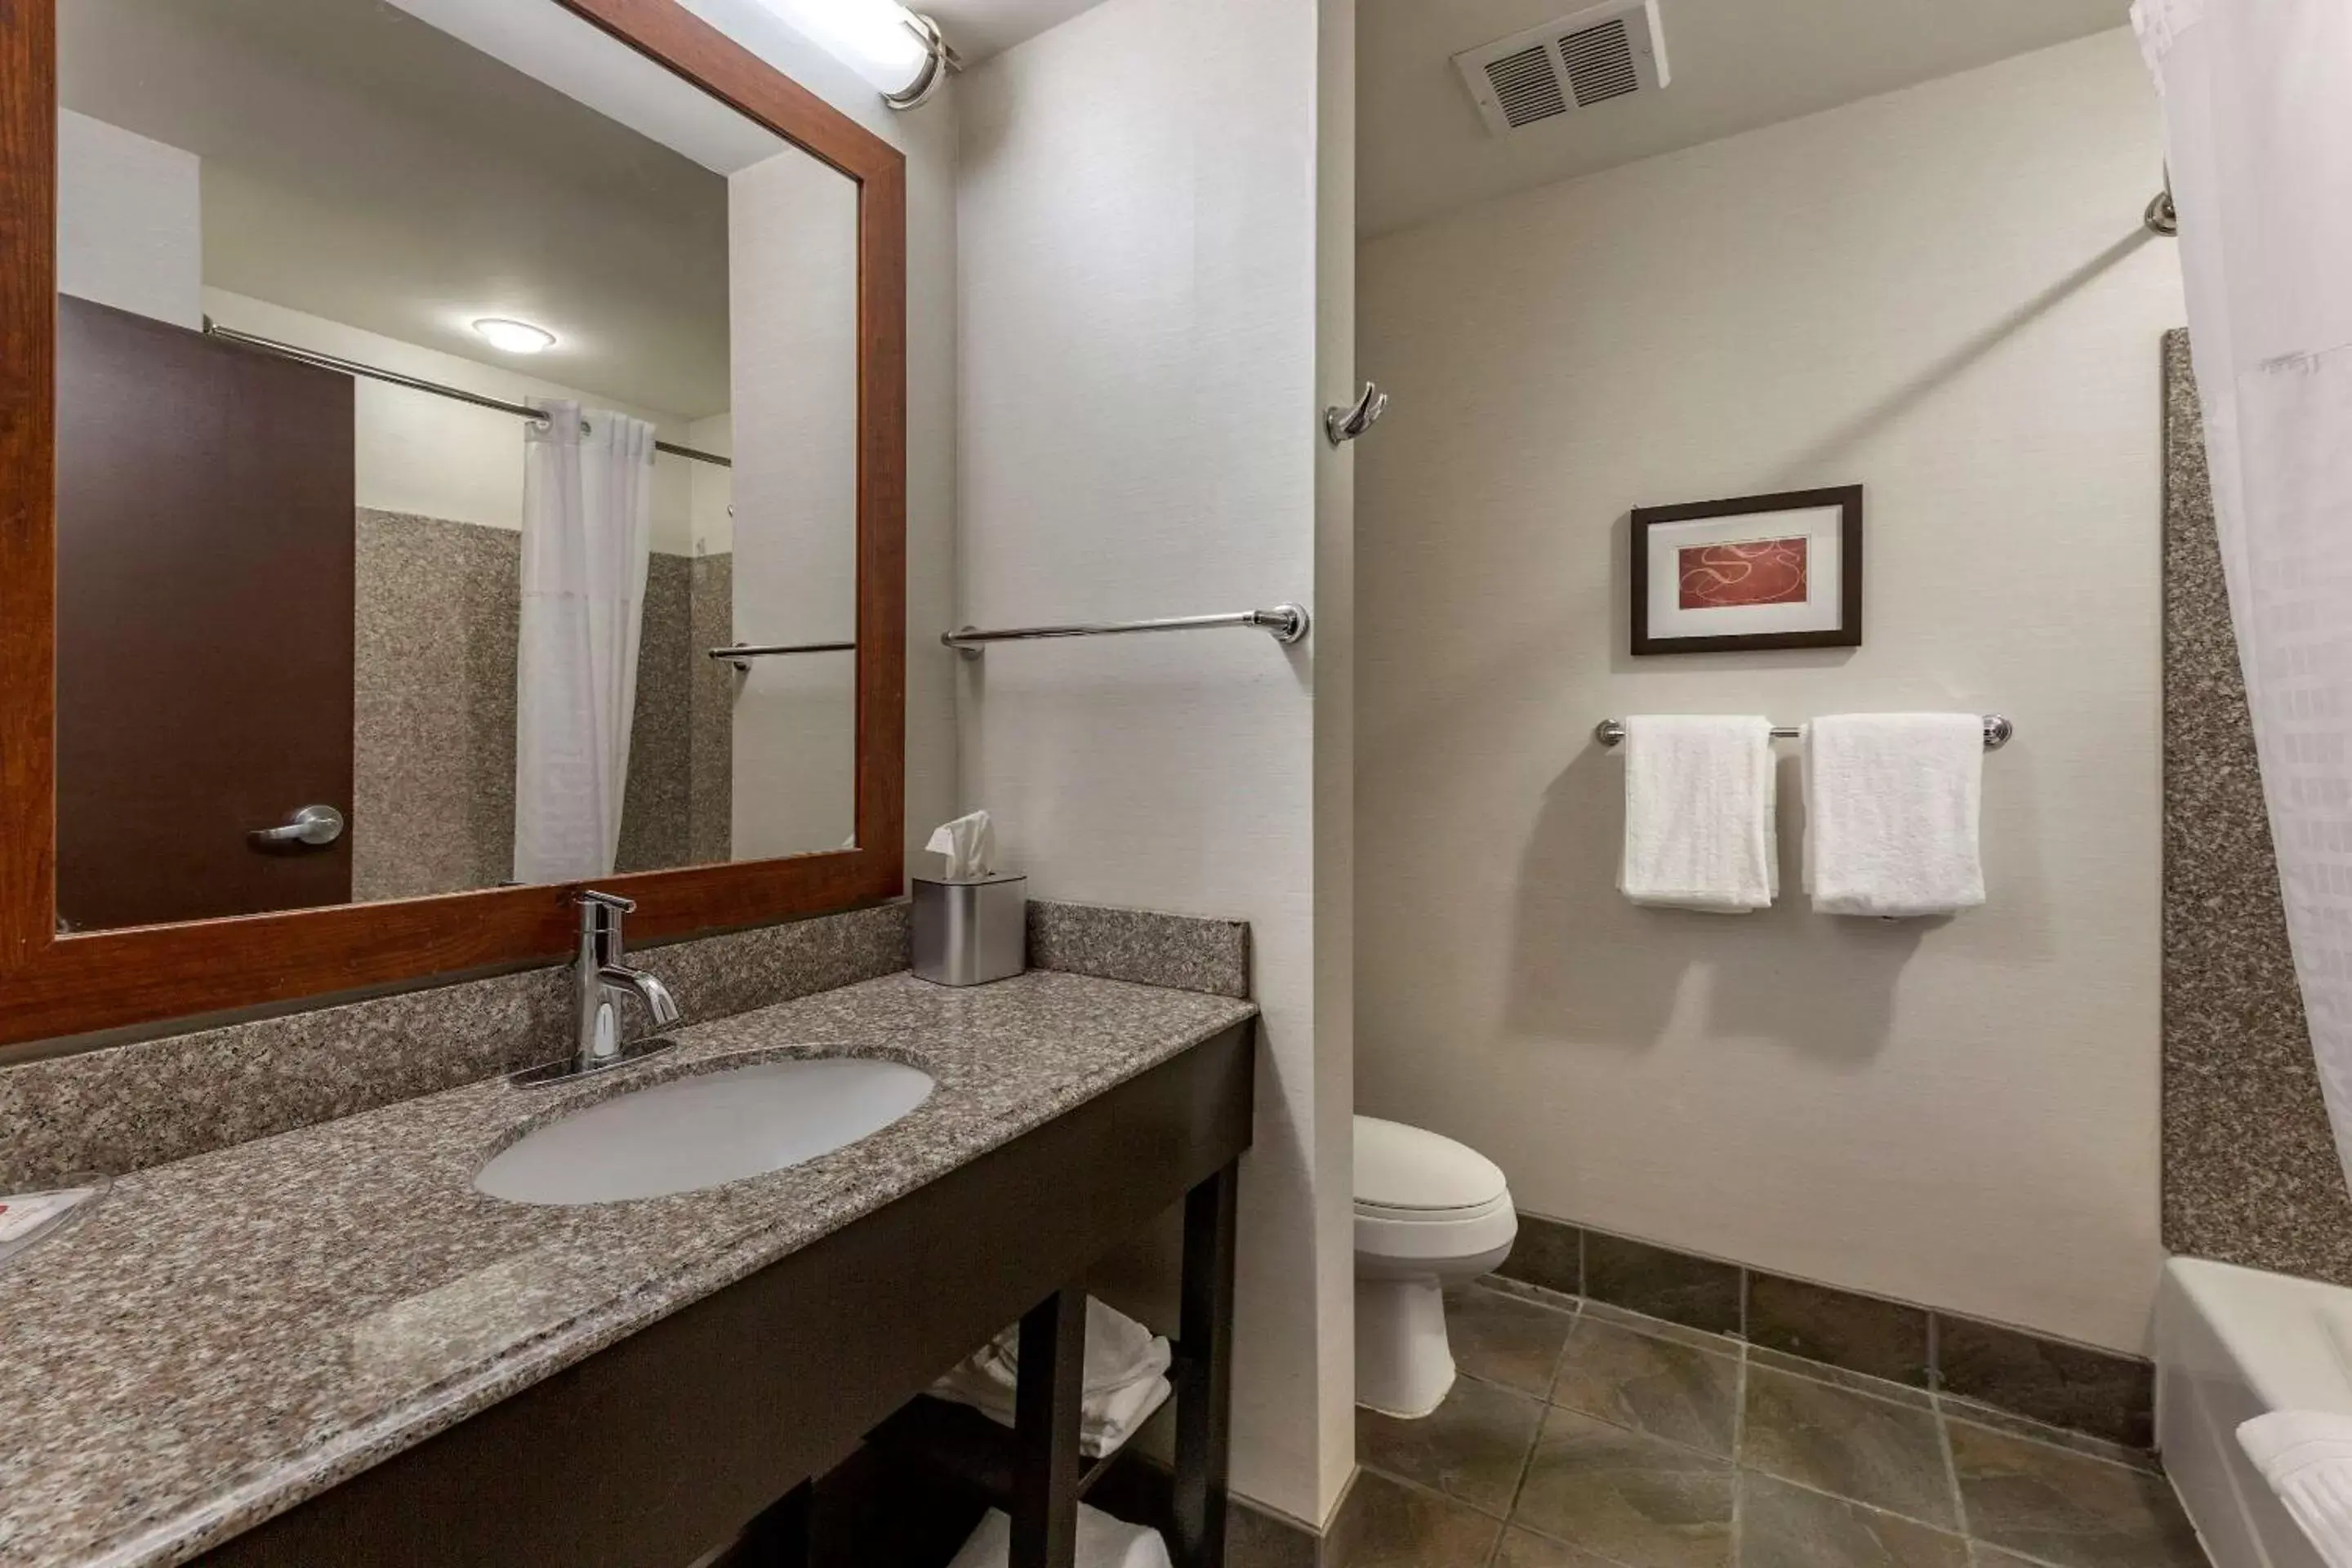 Bedroom, Bathroom in Comfort Suites Perrysburg